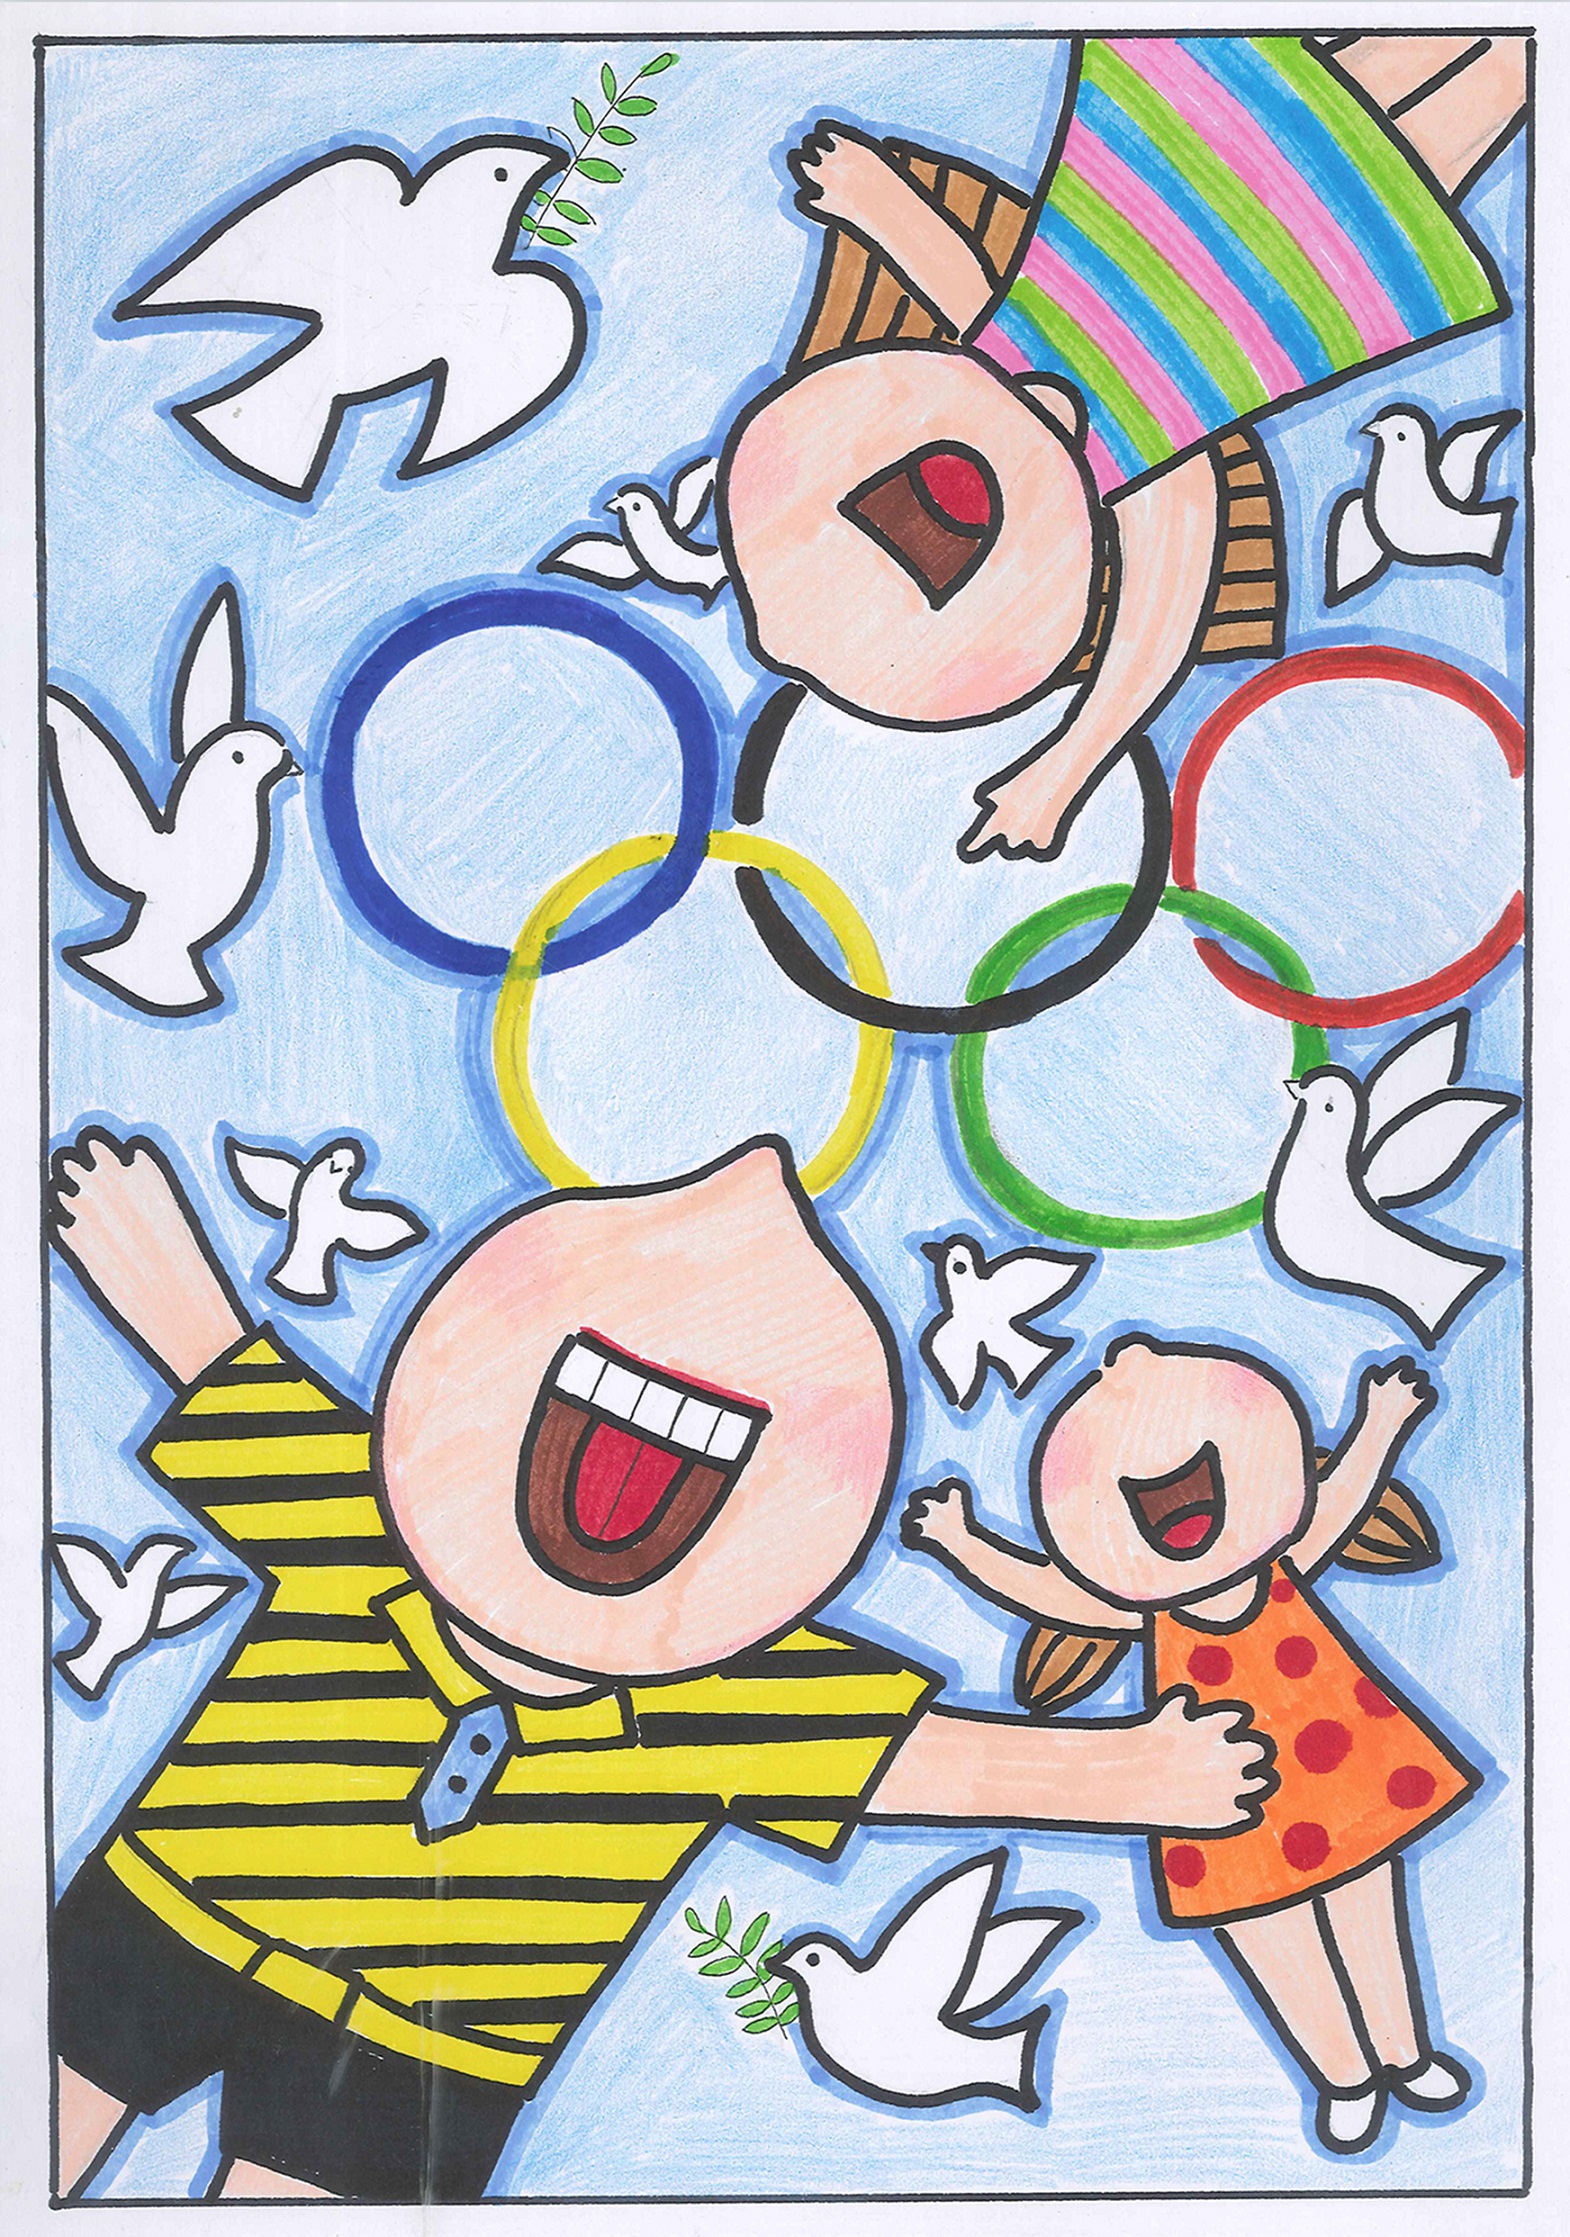 和平奥运 Peaceful Olympics+王子铮 Wang Zizheng